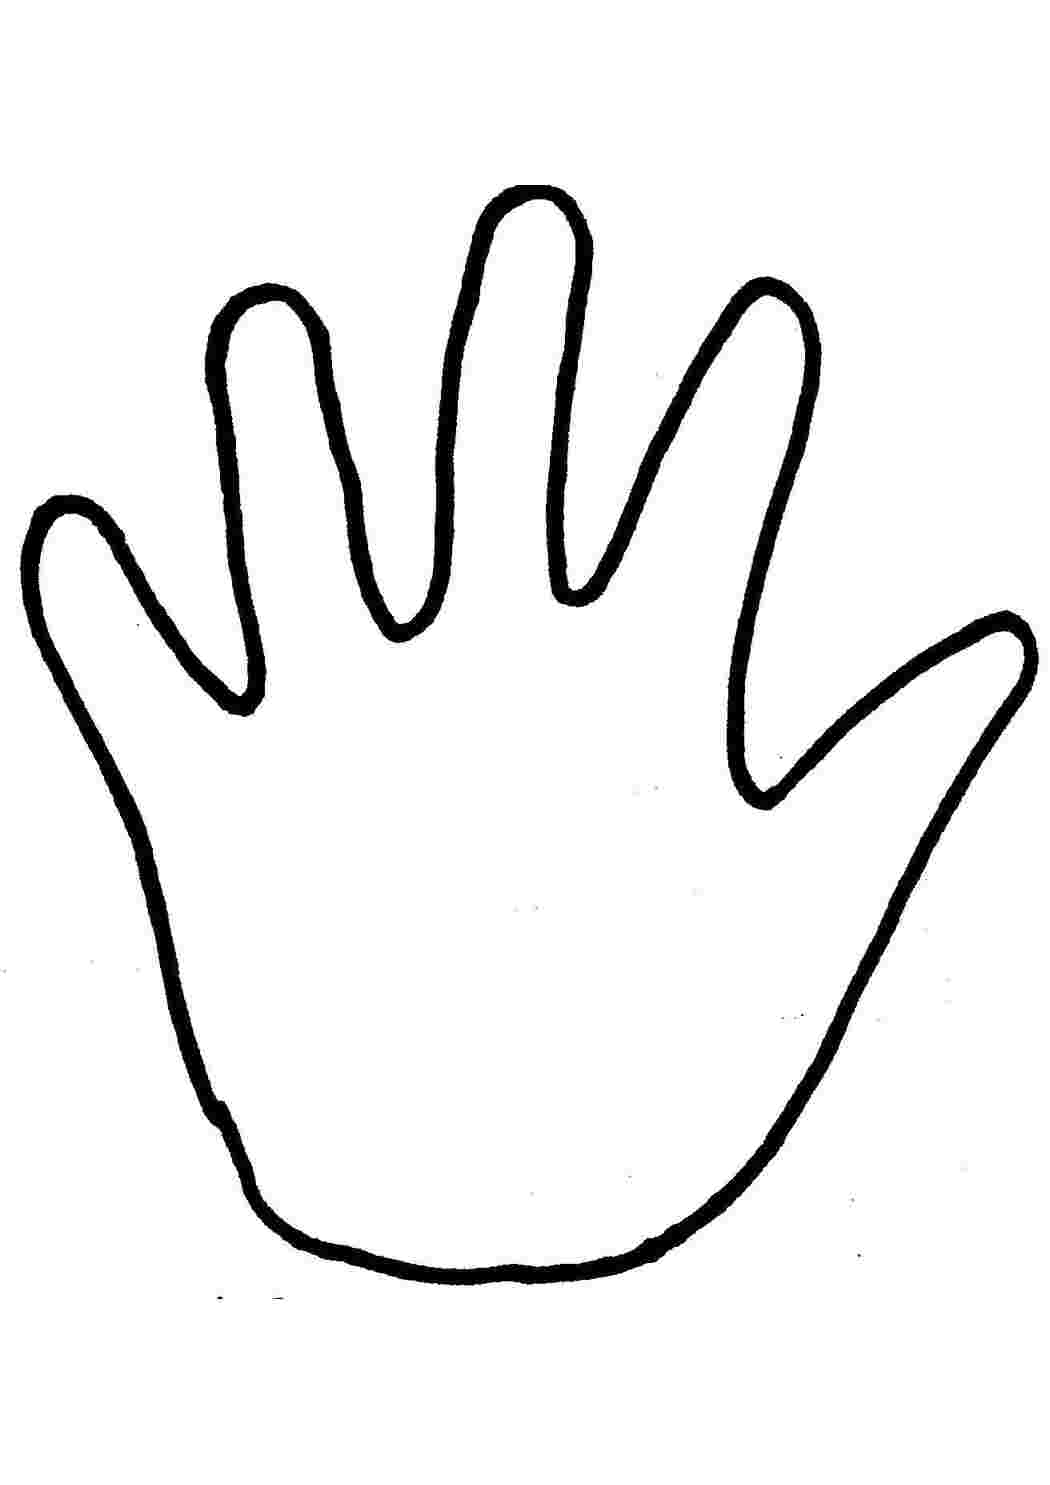 Как рисовать кисти рук: Конструкция| АРТАКАДЕМИЯ Курсы рисования Киев